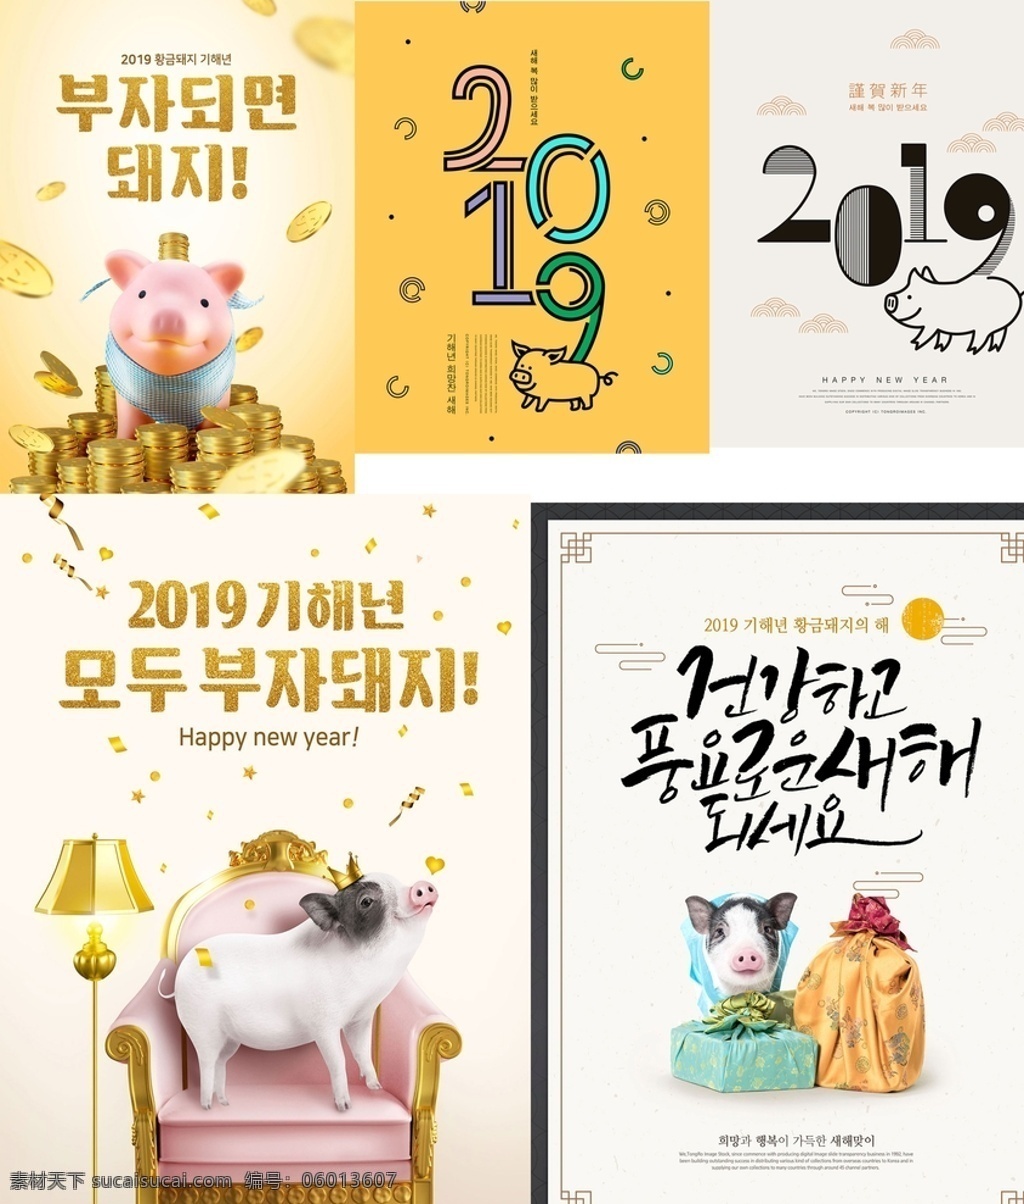 猪年海报设计 猪年 2031年 猪年海报 猪年设计海报 黄色设计海报 白色设计海报 海报 广告海报